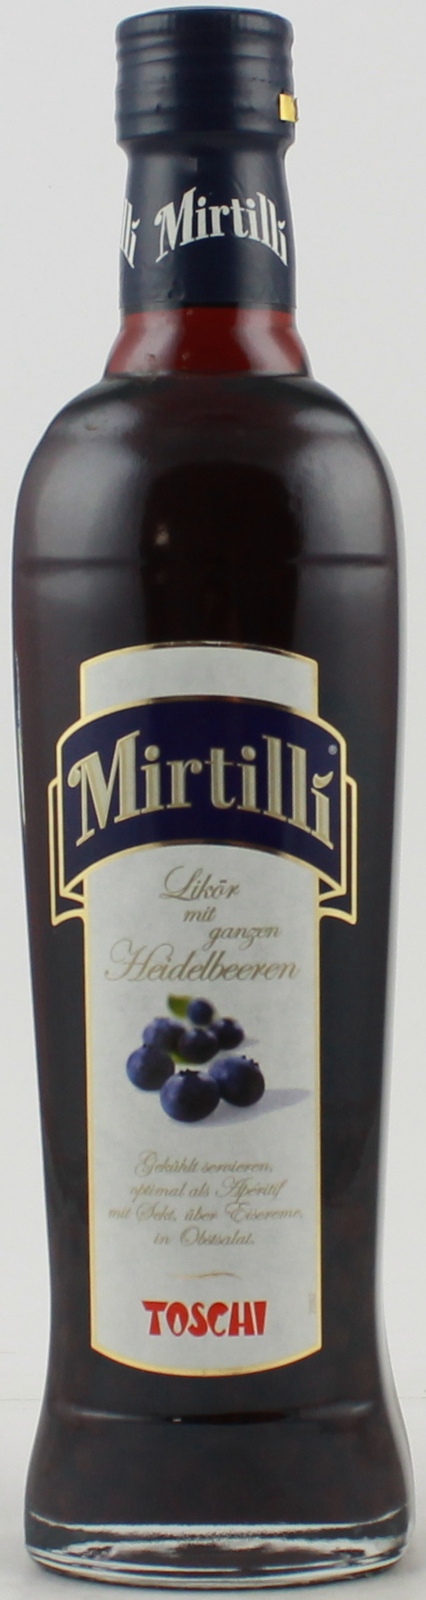 Toschi Mirtilli (Heidelbeerlikör) 0,5 Liter 24% Vol.